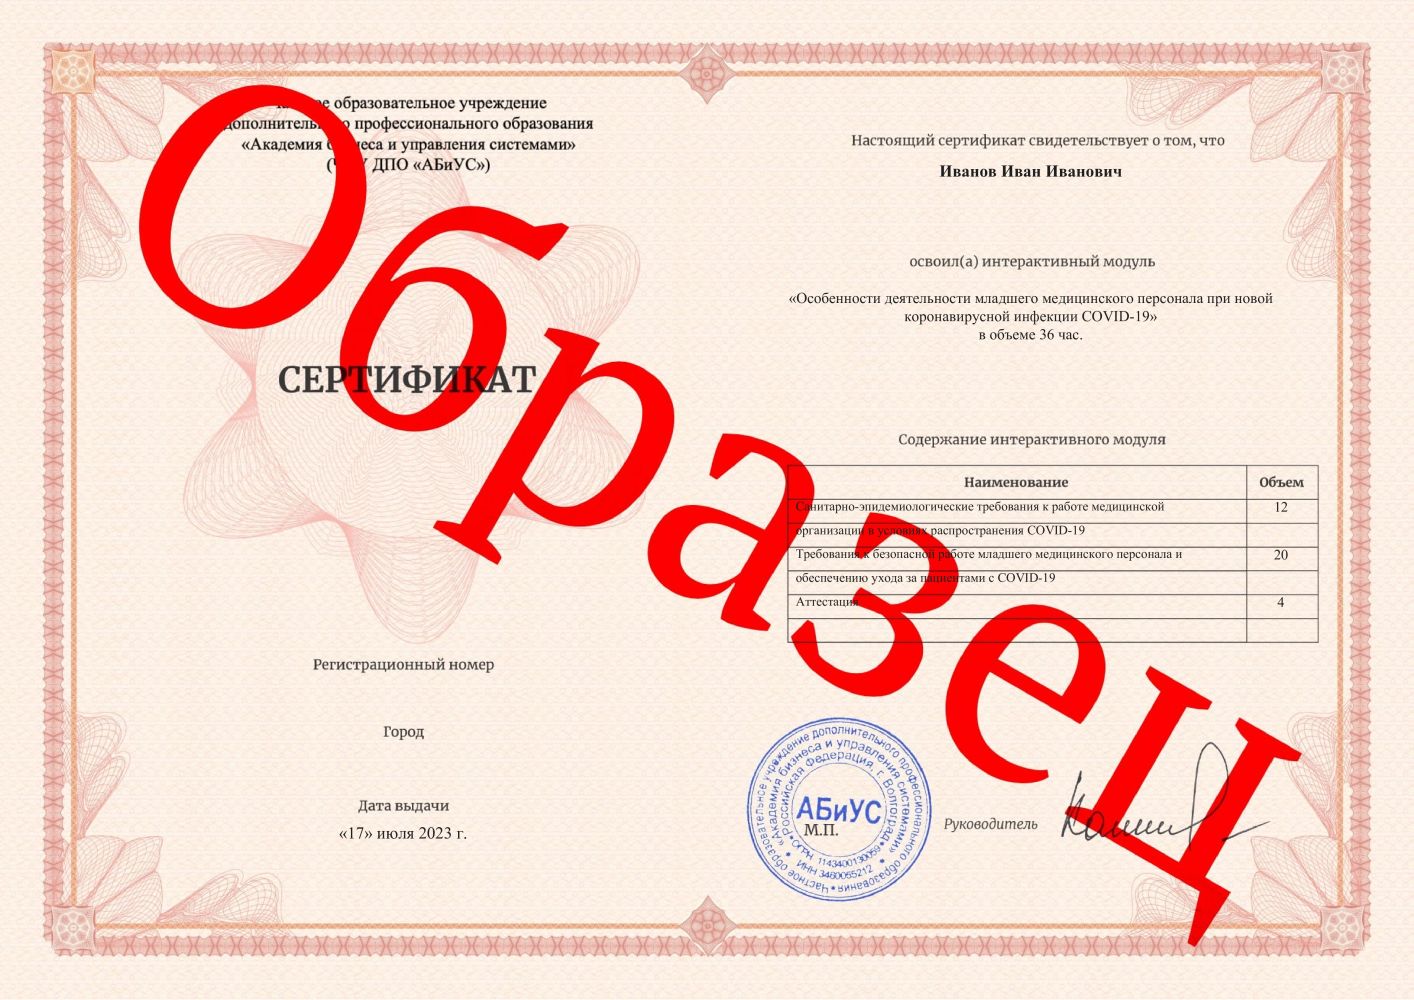 Сертификат Особенности деятельности младшего медицинского персонала при новой коронавирусной инфекции COVID-19 36 часов 1125 руб.